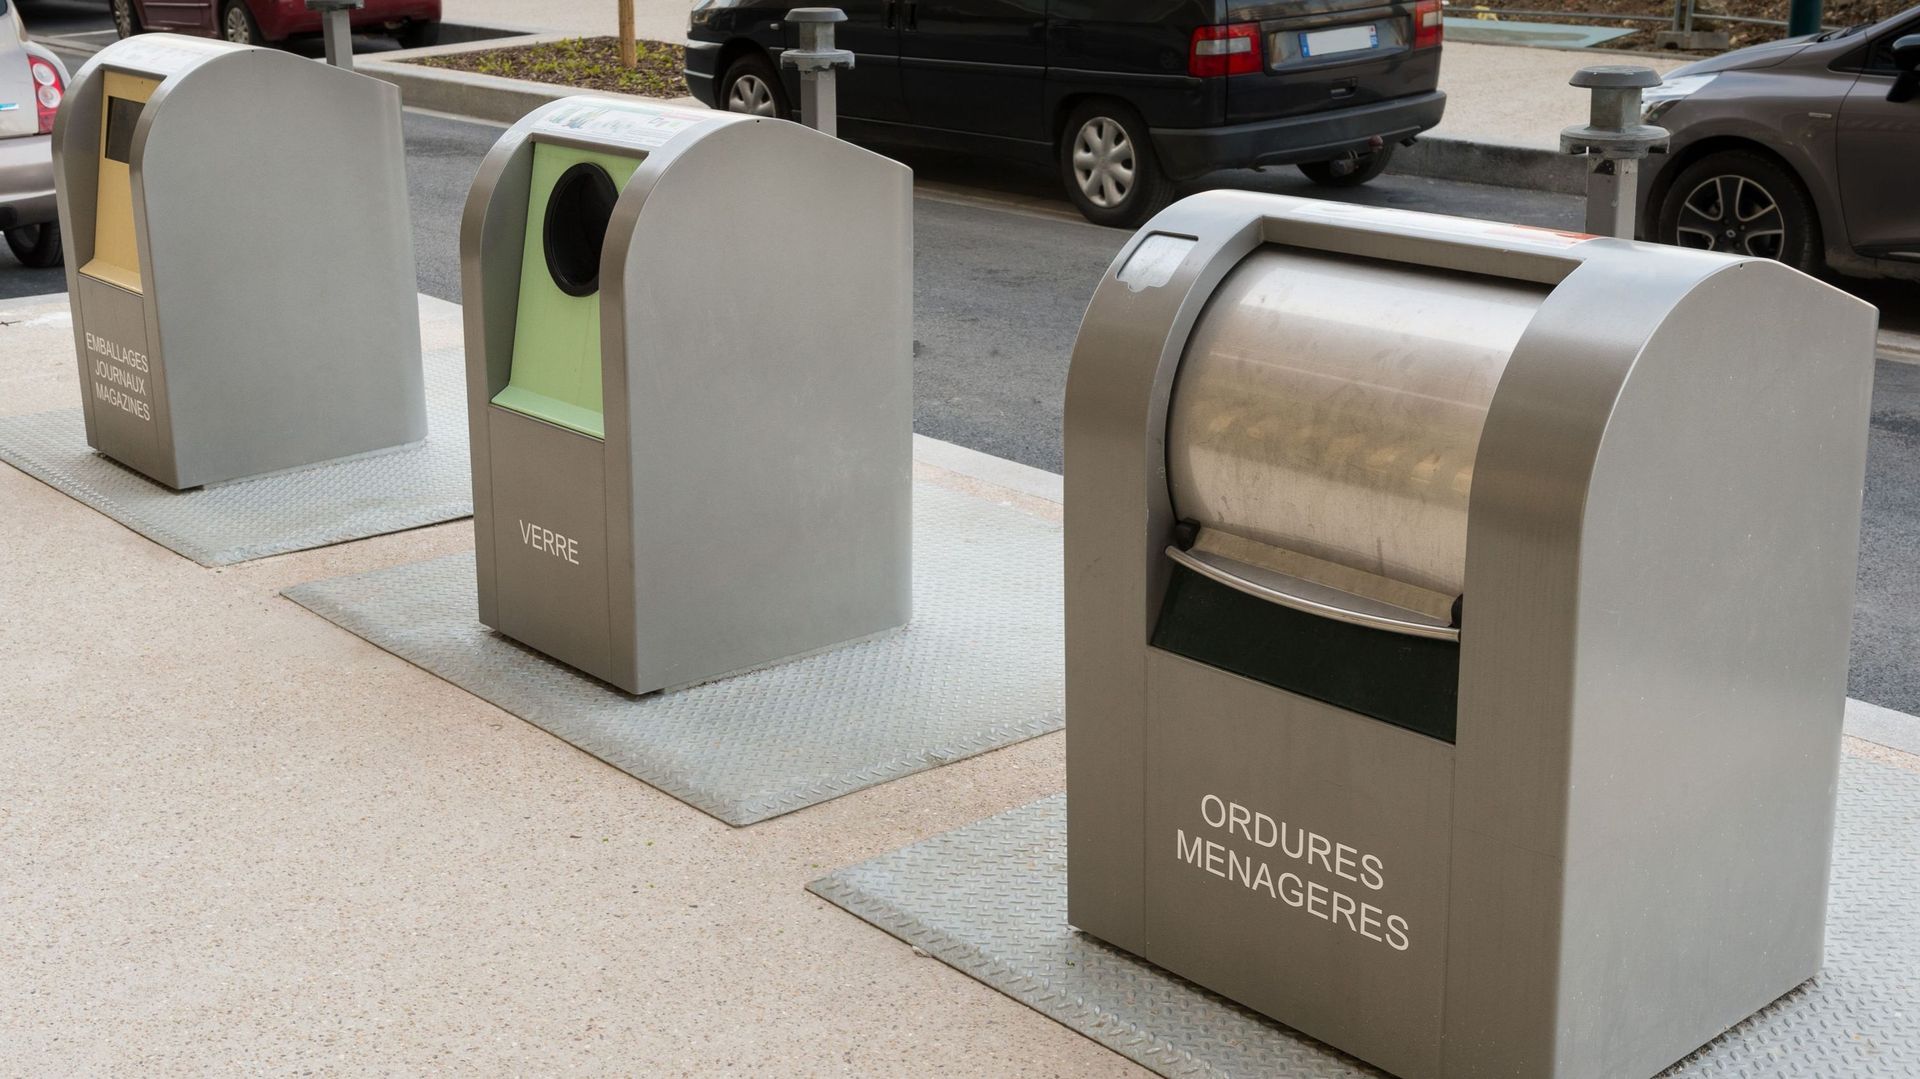 La Wallonie va améliorer le tri des déchets dans les poubelles publiques